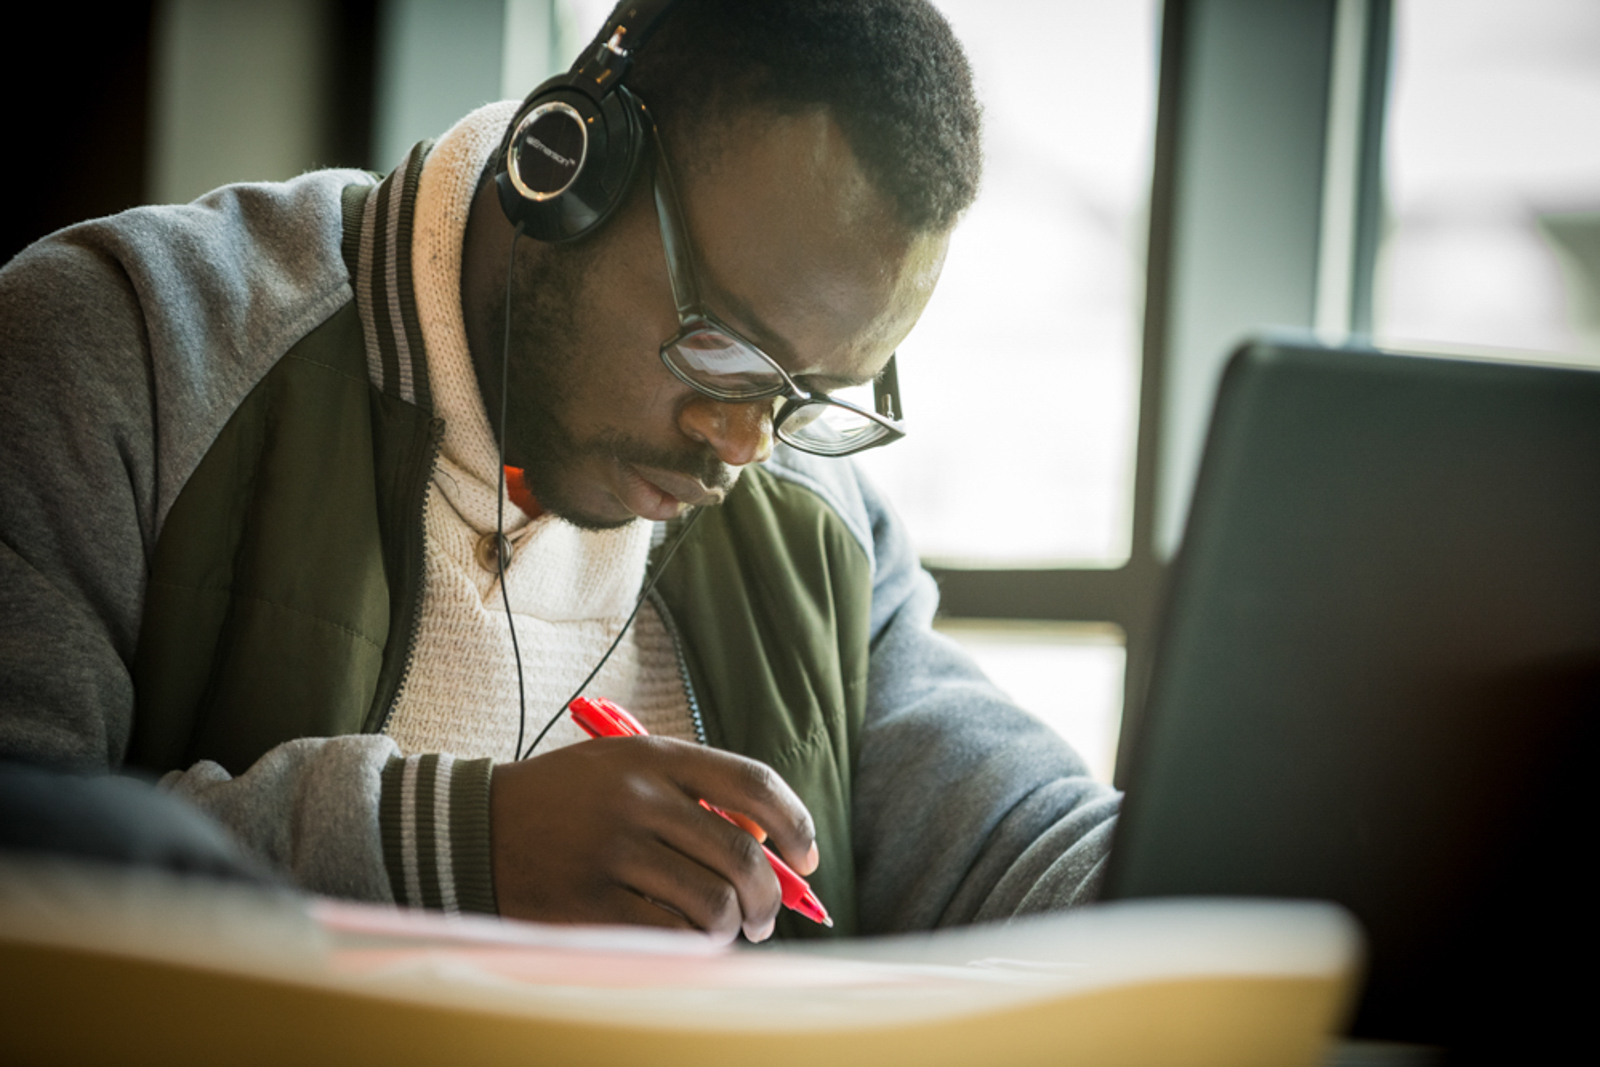 Student focusing on work, wearing headphones